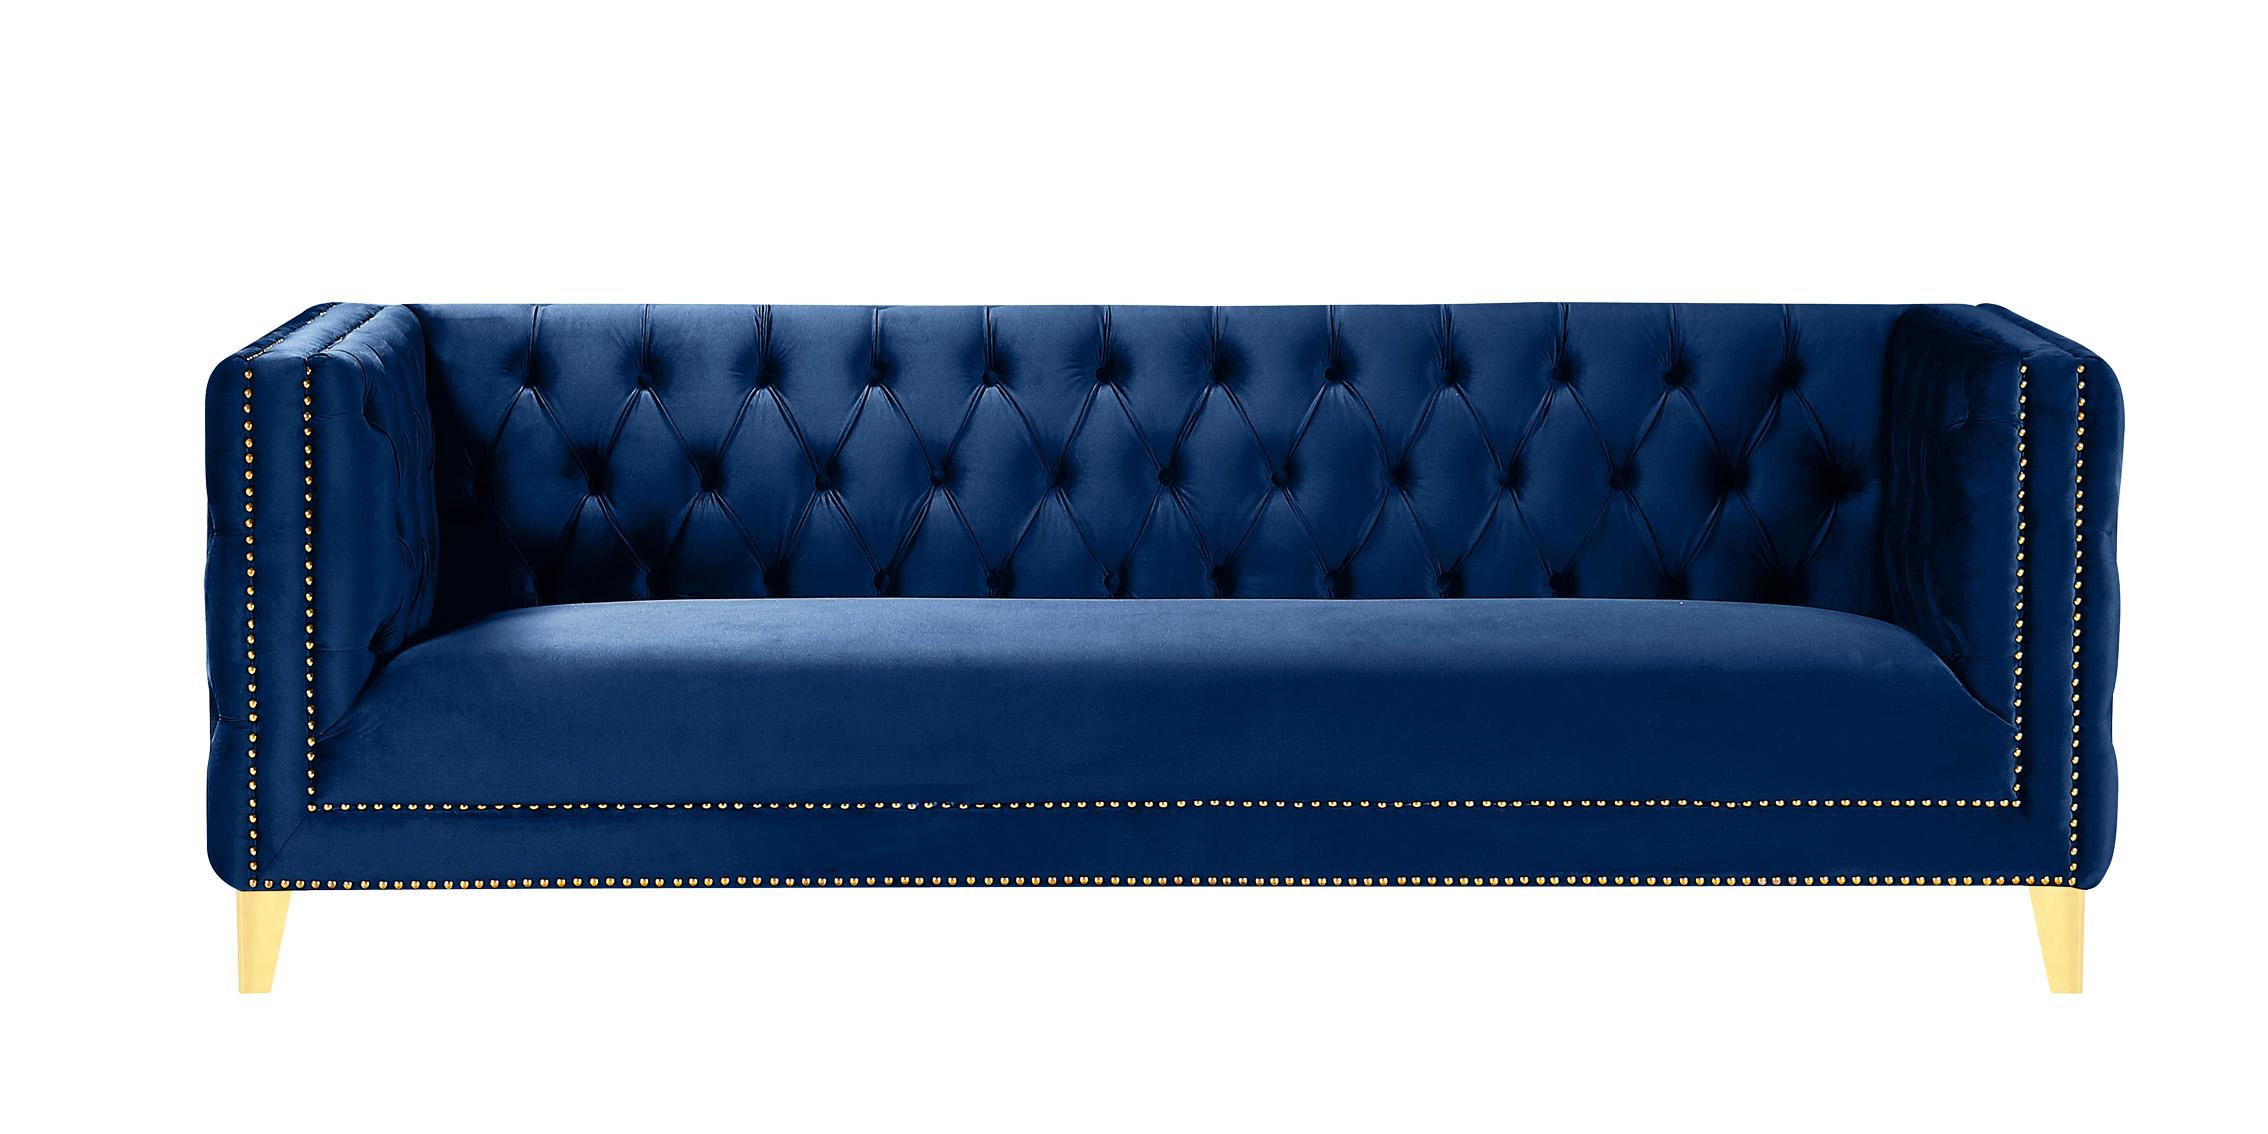 

    
Glam Navy Velvet Tufted Sofa MICHELLE 652Navy-S Meridian Contemporary Modern
